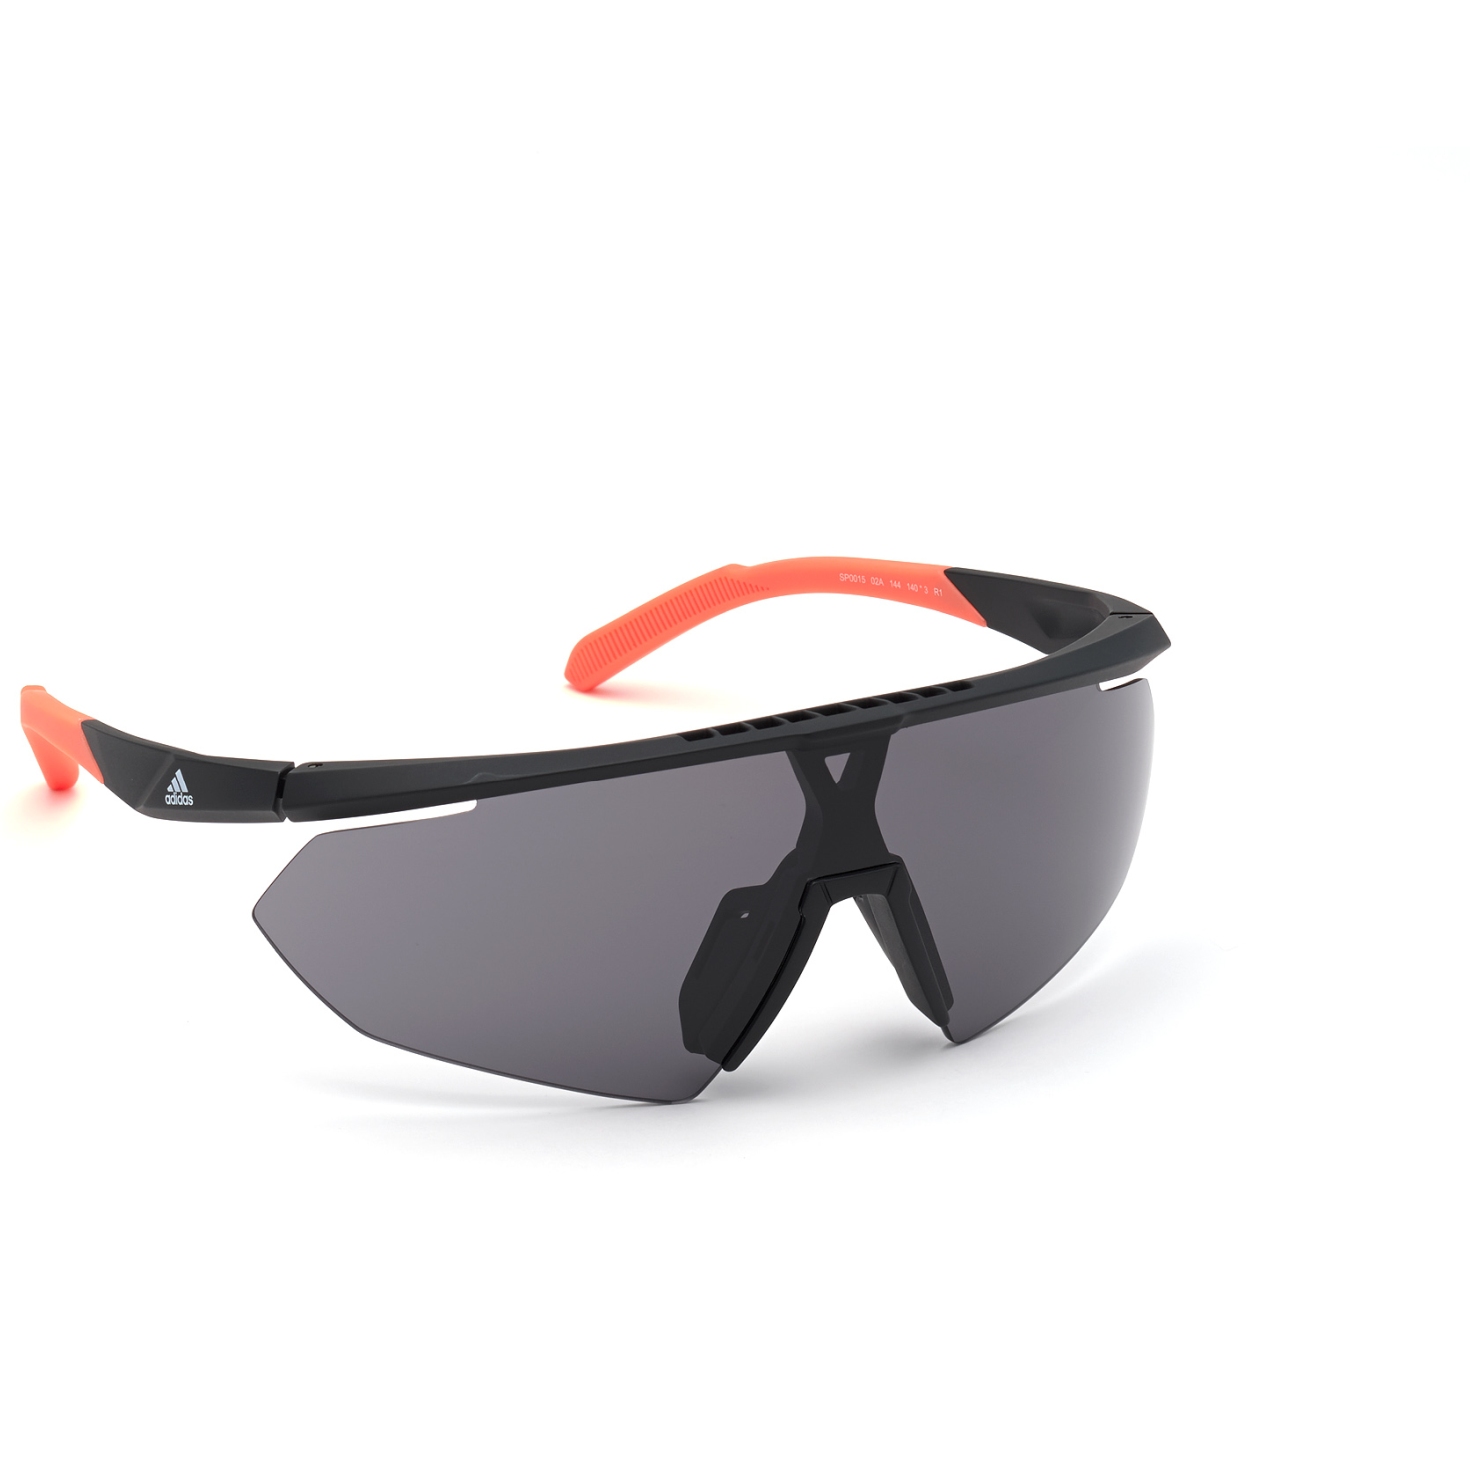 Produktbild von adidas Sp0015 Injected Sonnenbrille - Matte Black / Contrast Black + Orange